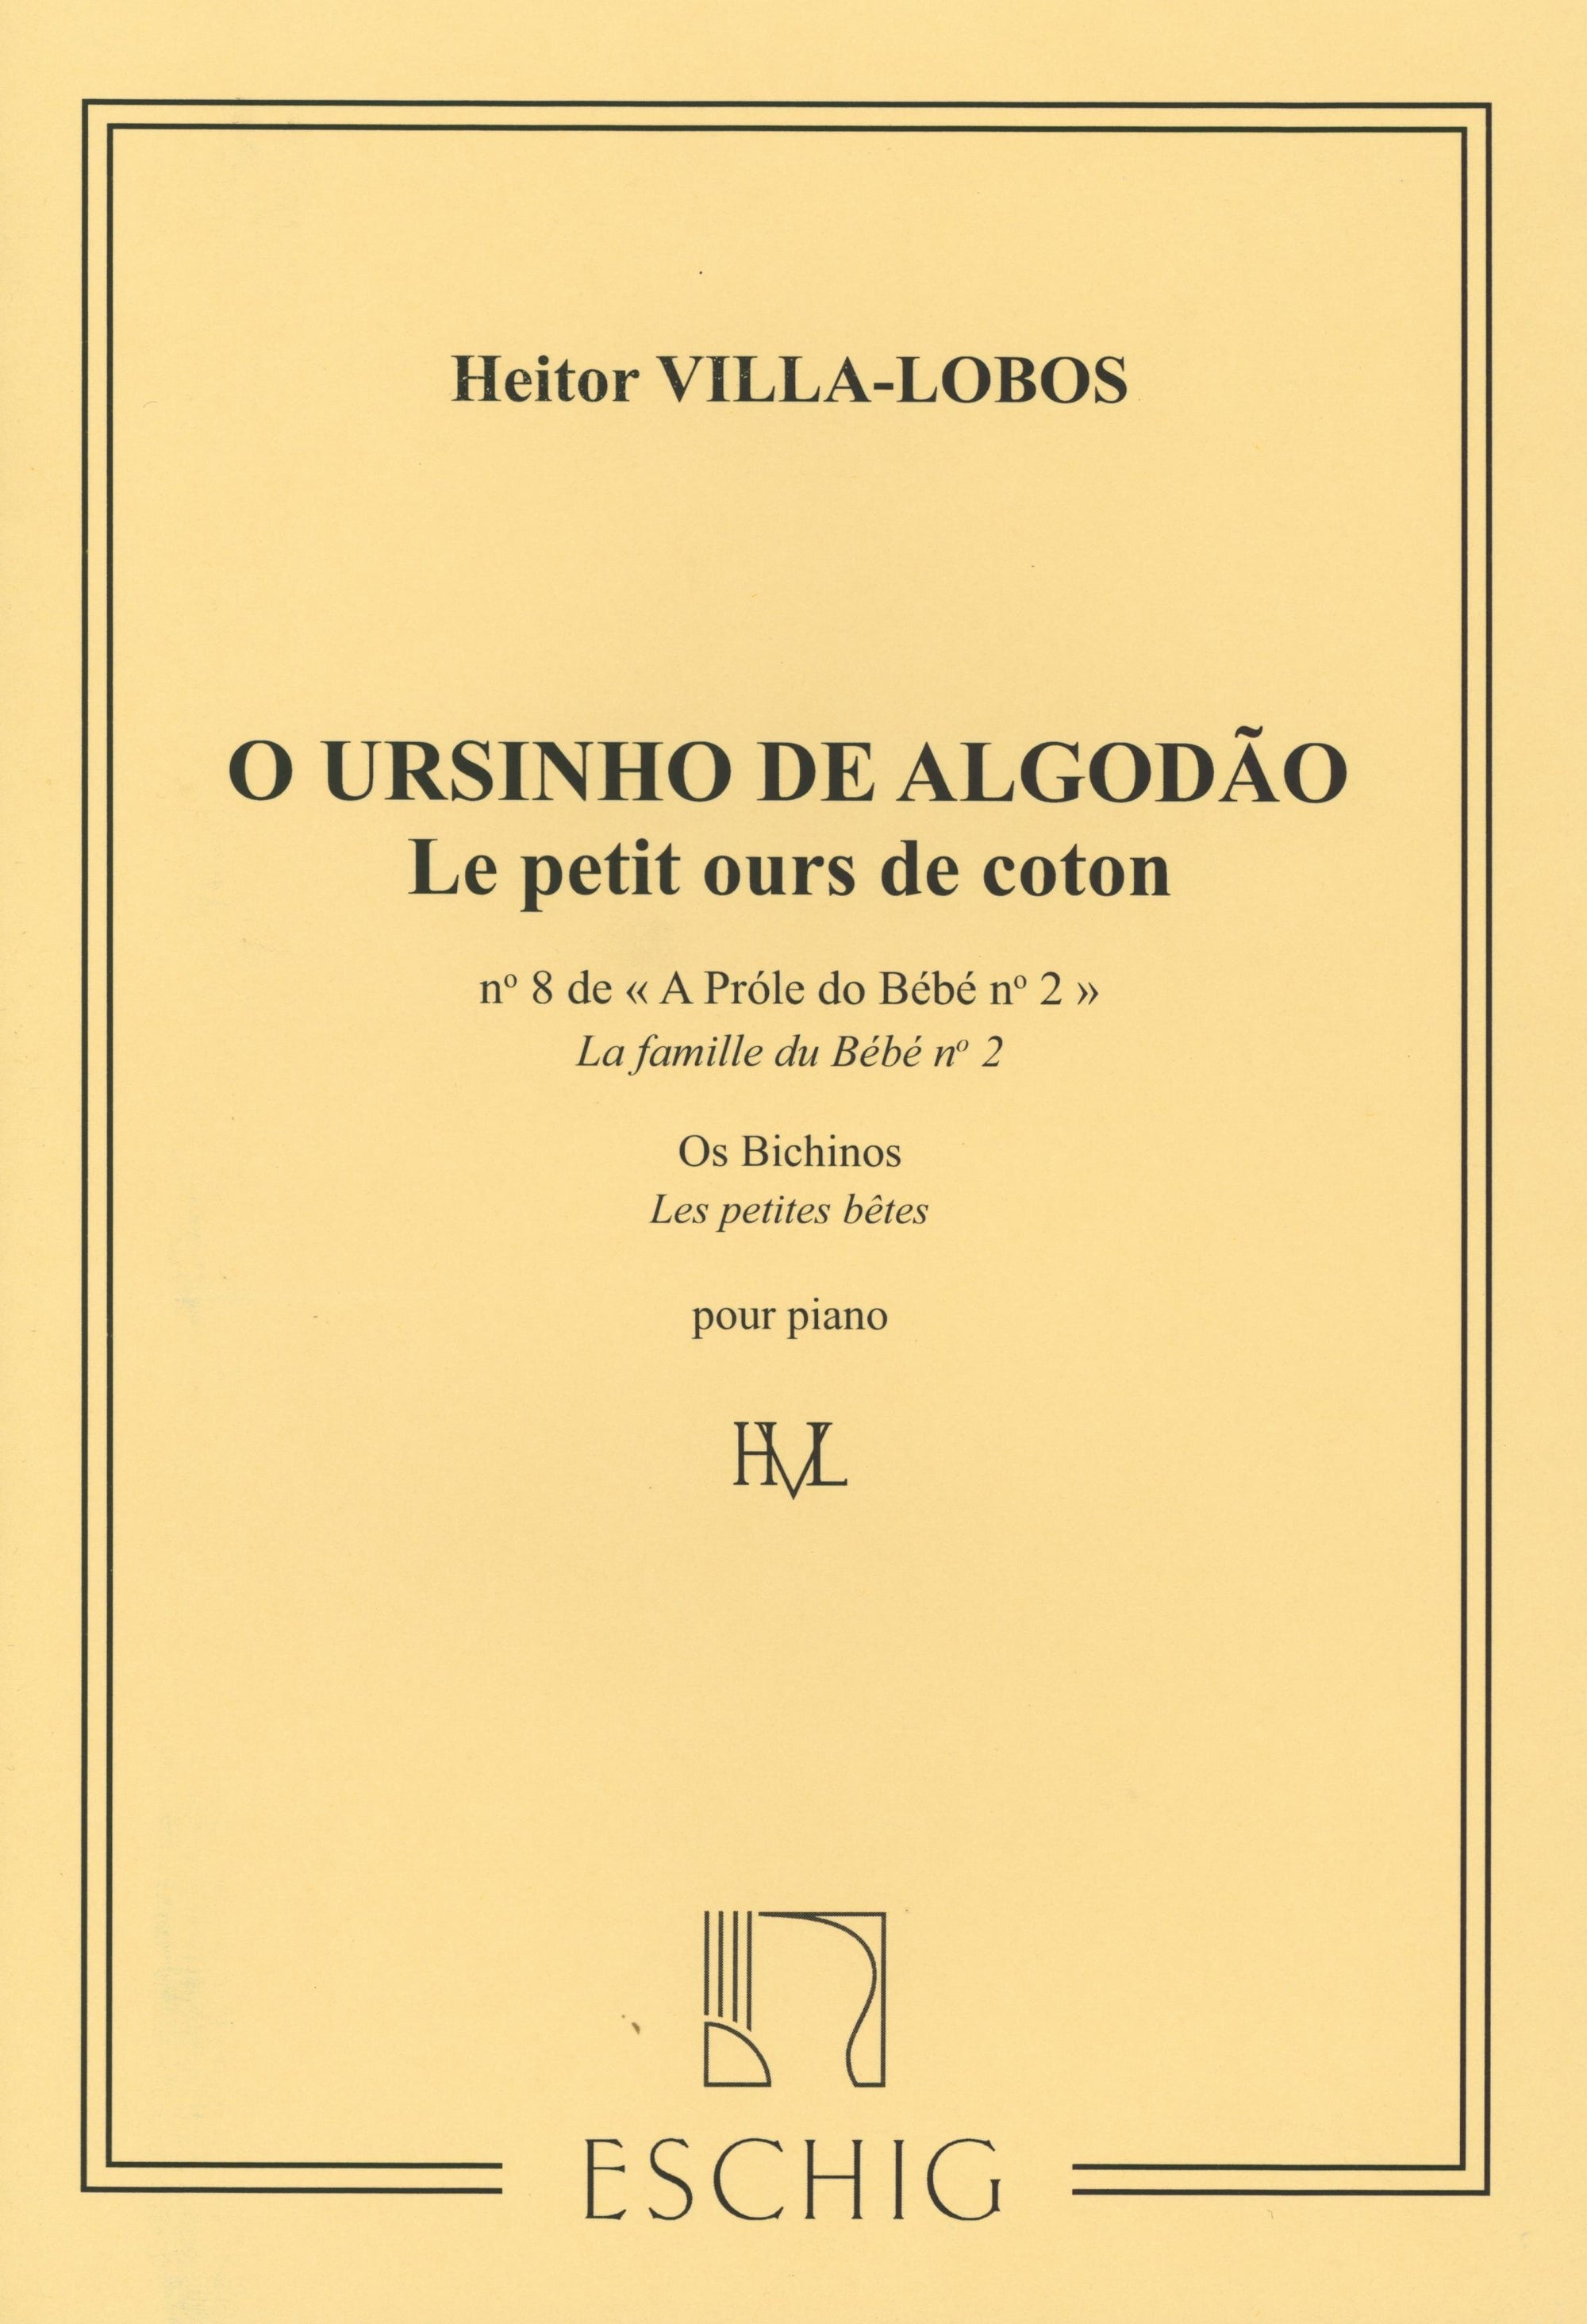 Viila-Lobos: "O Ursinho de Algodão" from A Próle do Bébé, 2nd Series